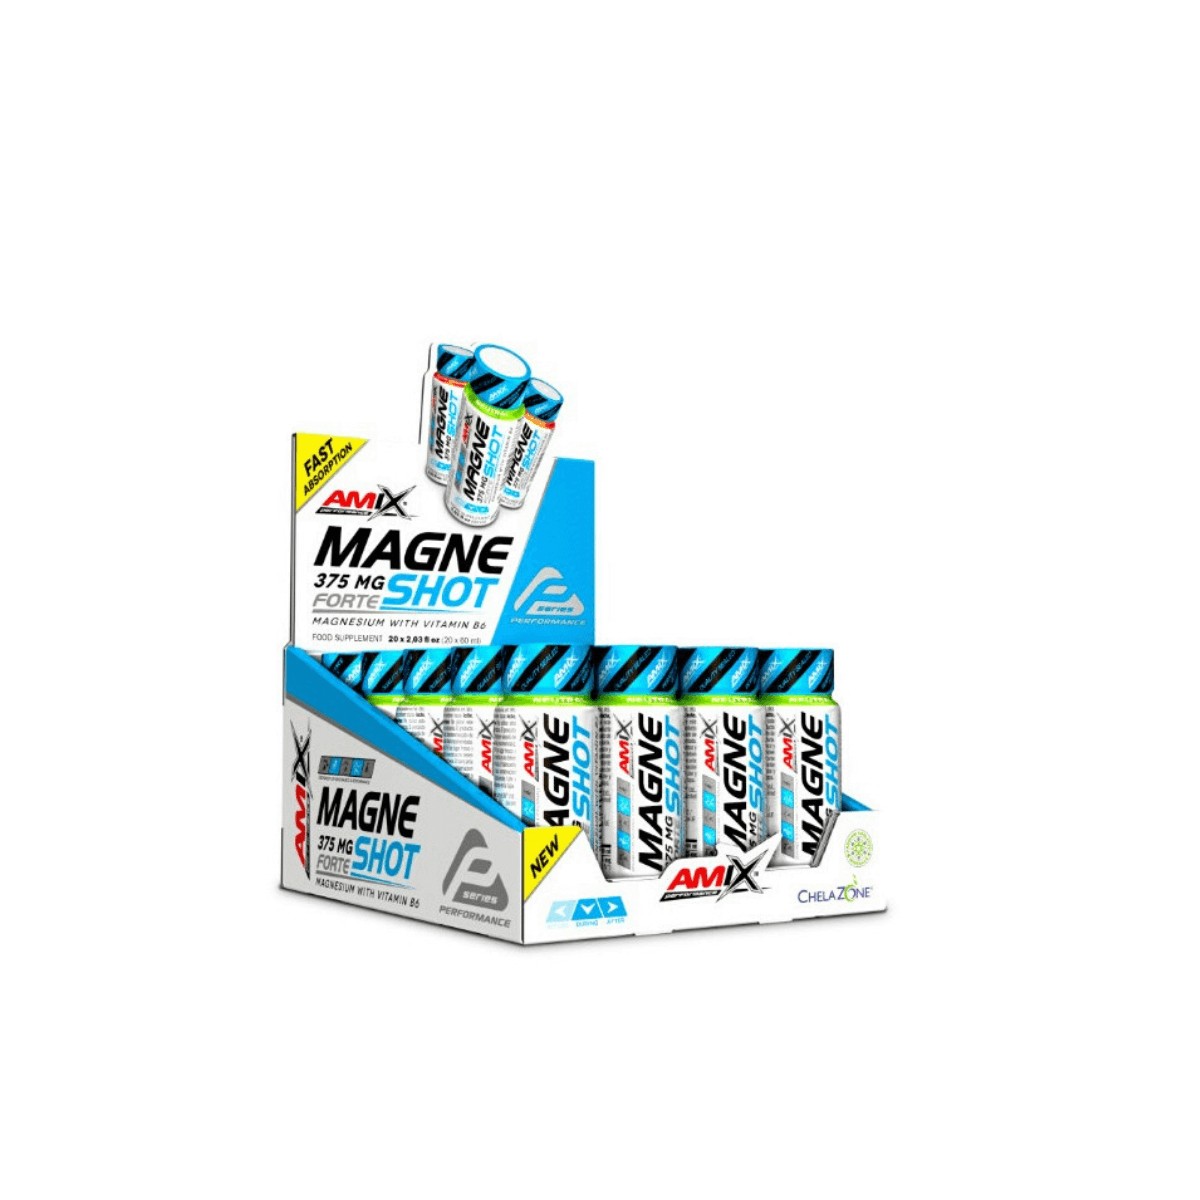 Pro Performance günstig Kaufen-AMIX MagneShot Forte Griff 1ud. AMIX MagneShot Forte Griff 1ud <![CDATA[AMIX MagneShot Forte 375 mg Mango AMIX Performance MagneShot Forte 375 mg ist ein neues Produkt AMIX PERFORMANCE, ein ultrakonzentriertes Magnesium, das eine Menge von 375 mg Magnesiu